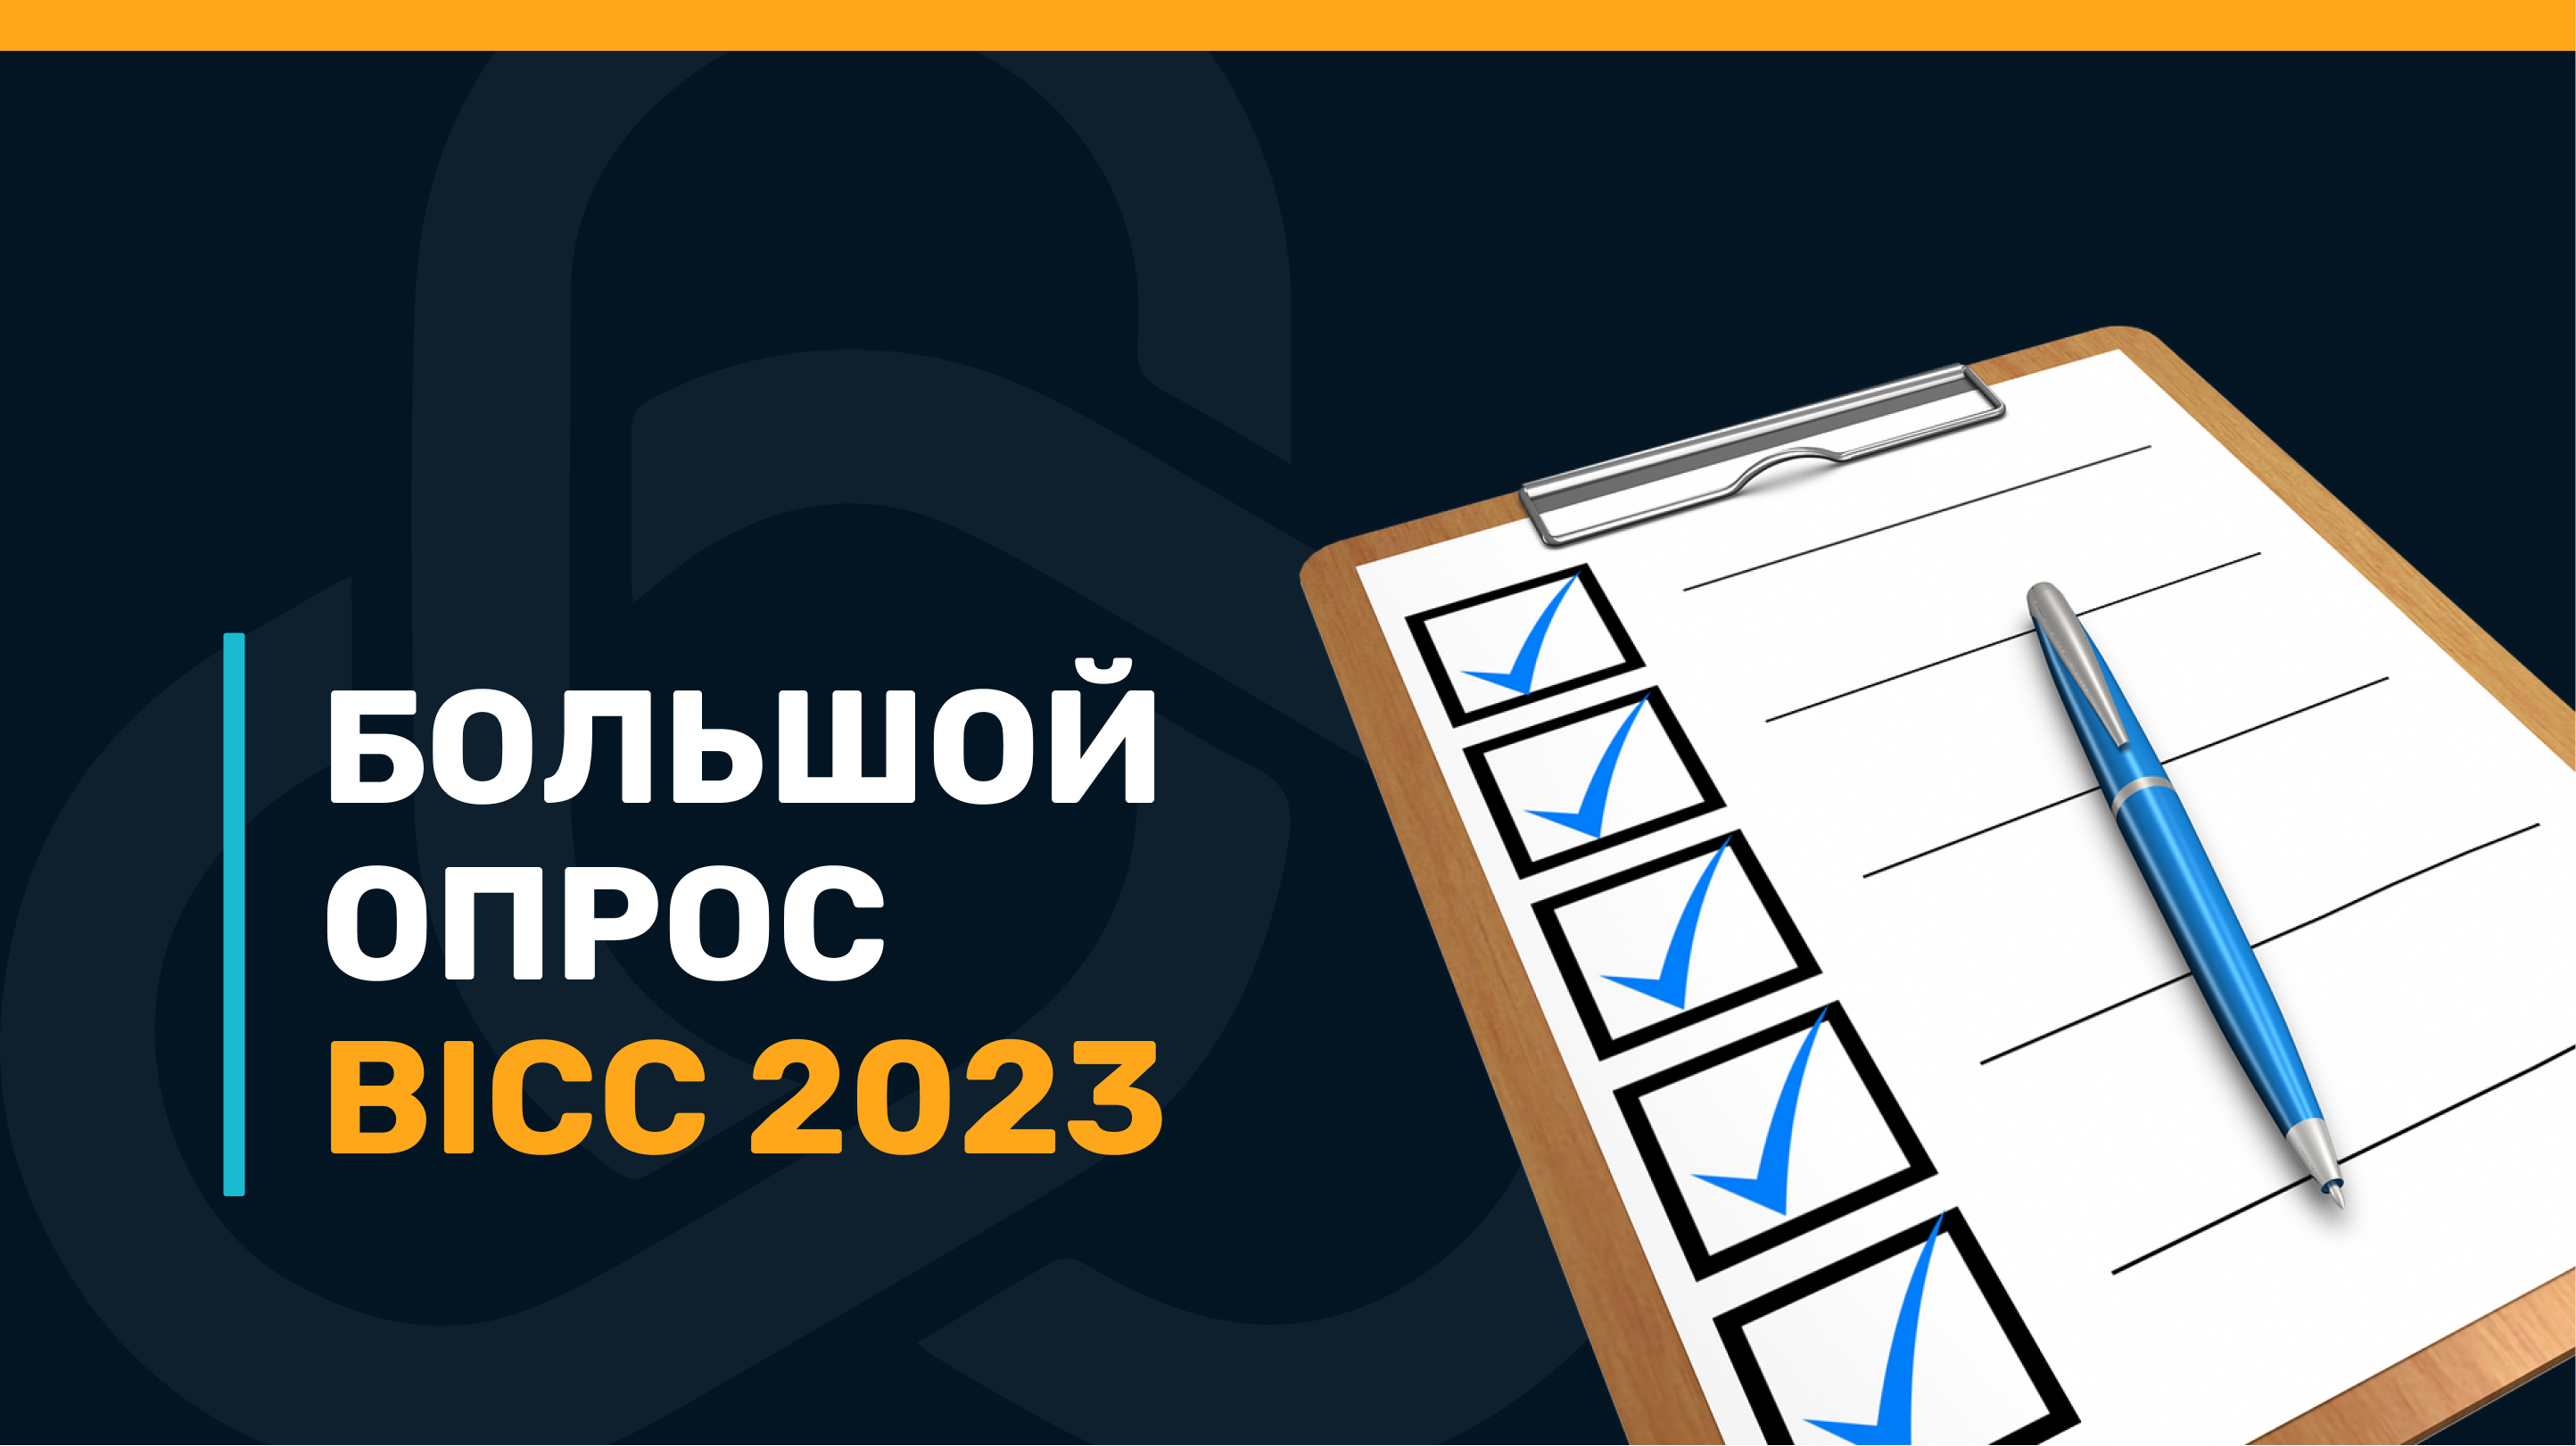 Ситуация в беларусских ИТ-компаниях в начале 2023. Большой опрос BICC